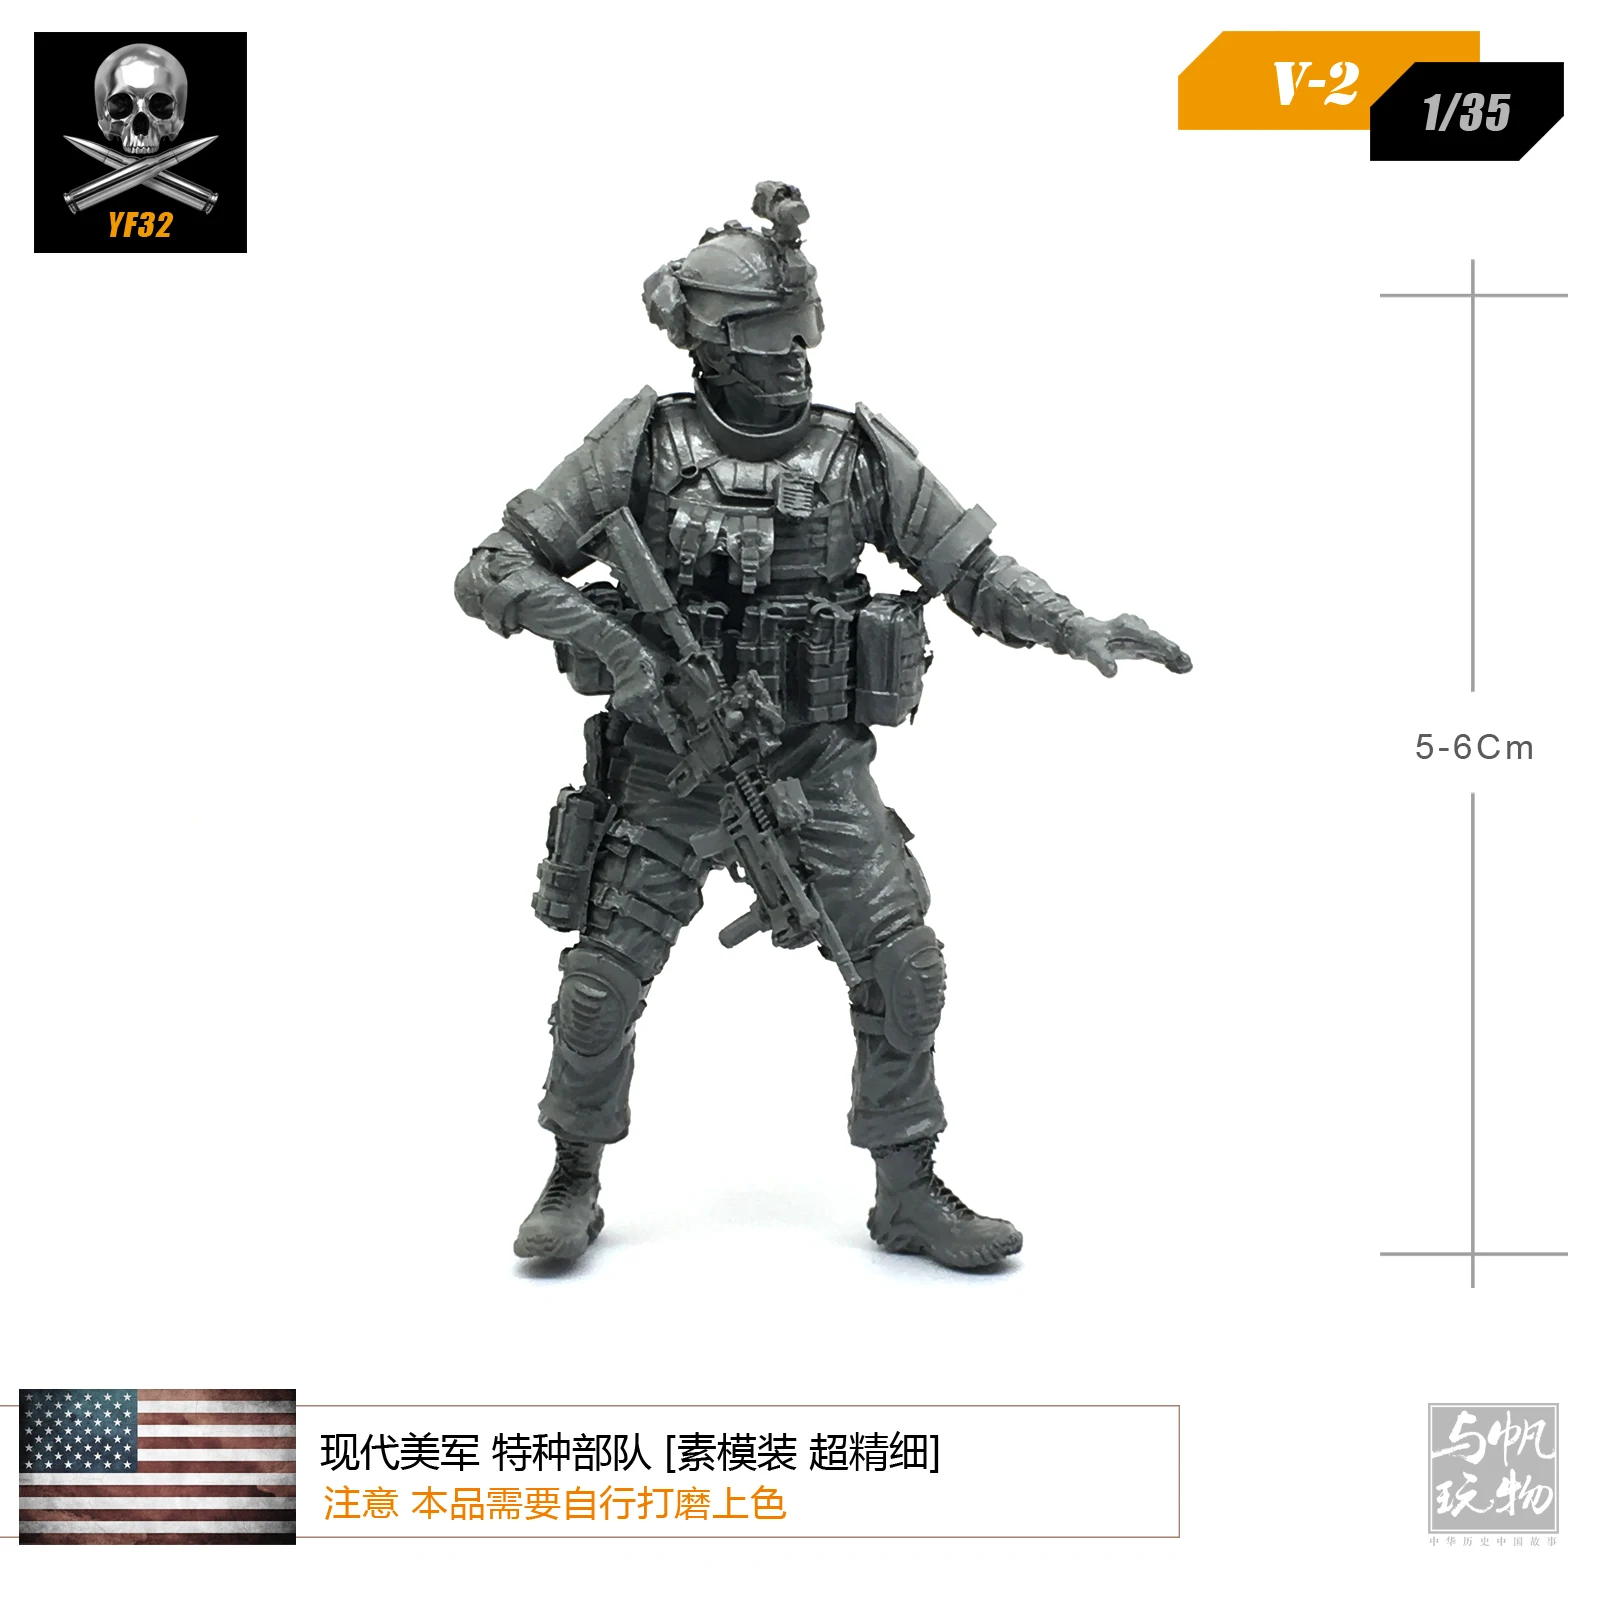 

1/35, набор моделей из смолы, модель солдата Армии США из смолы, Самосборная фигурка V2